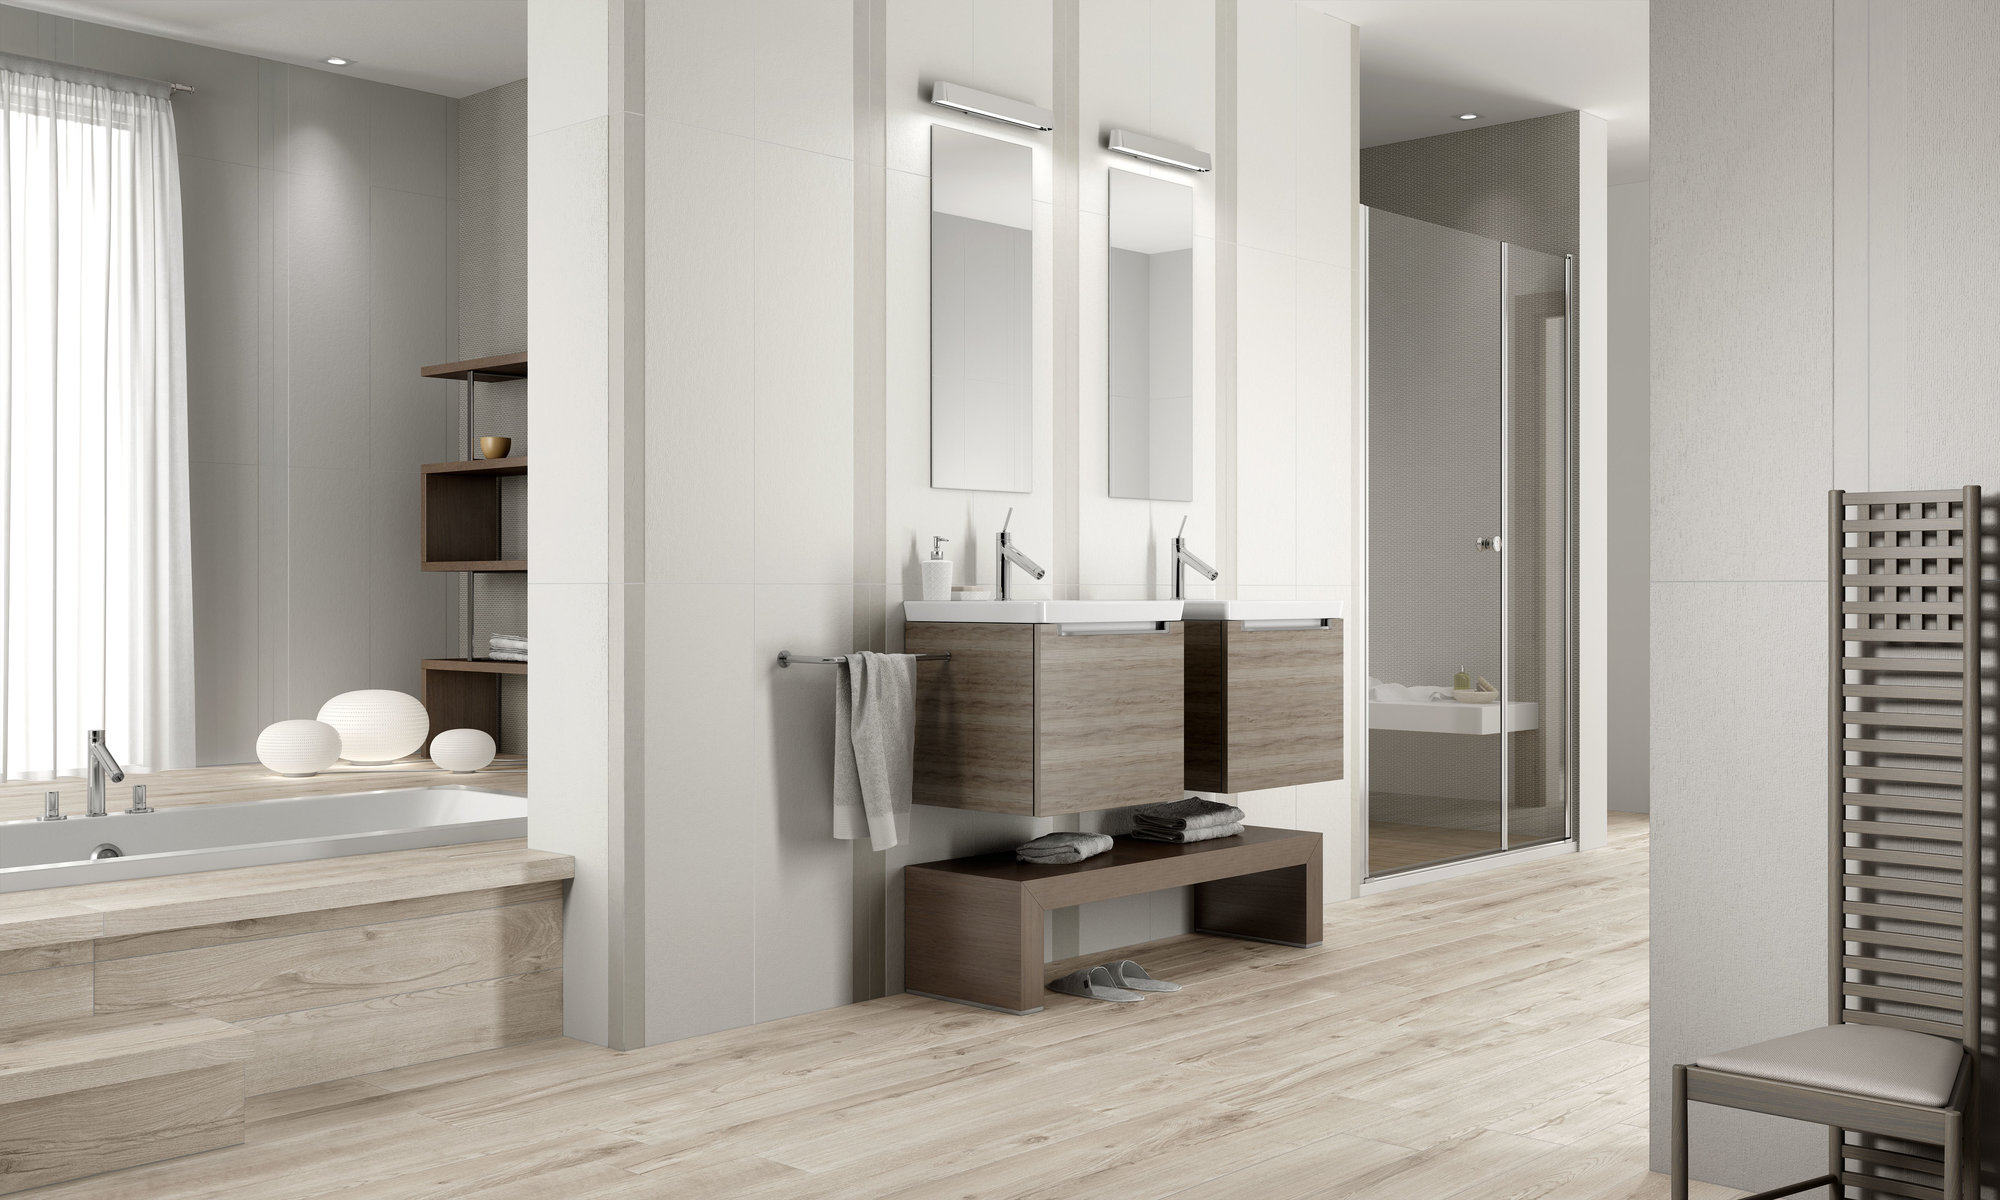 Duża, jasna łazienka z podłogą wyłożoną płytkami drewnopodobnymi, z dwoma szafkami z umywalkami i lustrami oraz kinkietami, z kabiną prysznicową i wanną oraz krzesełkiem z wysokim oparciem